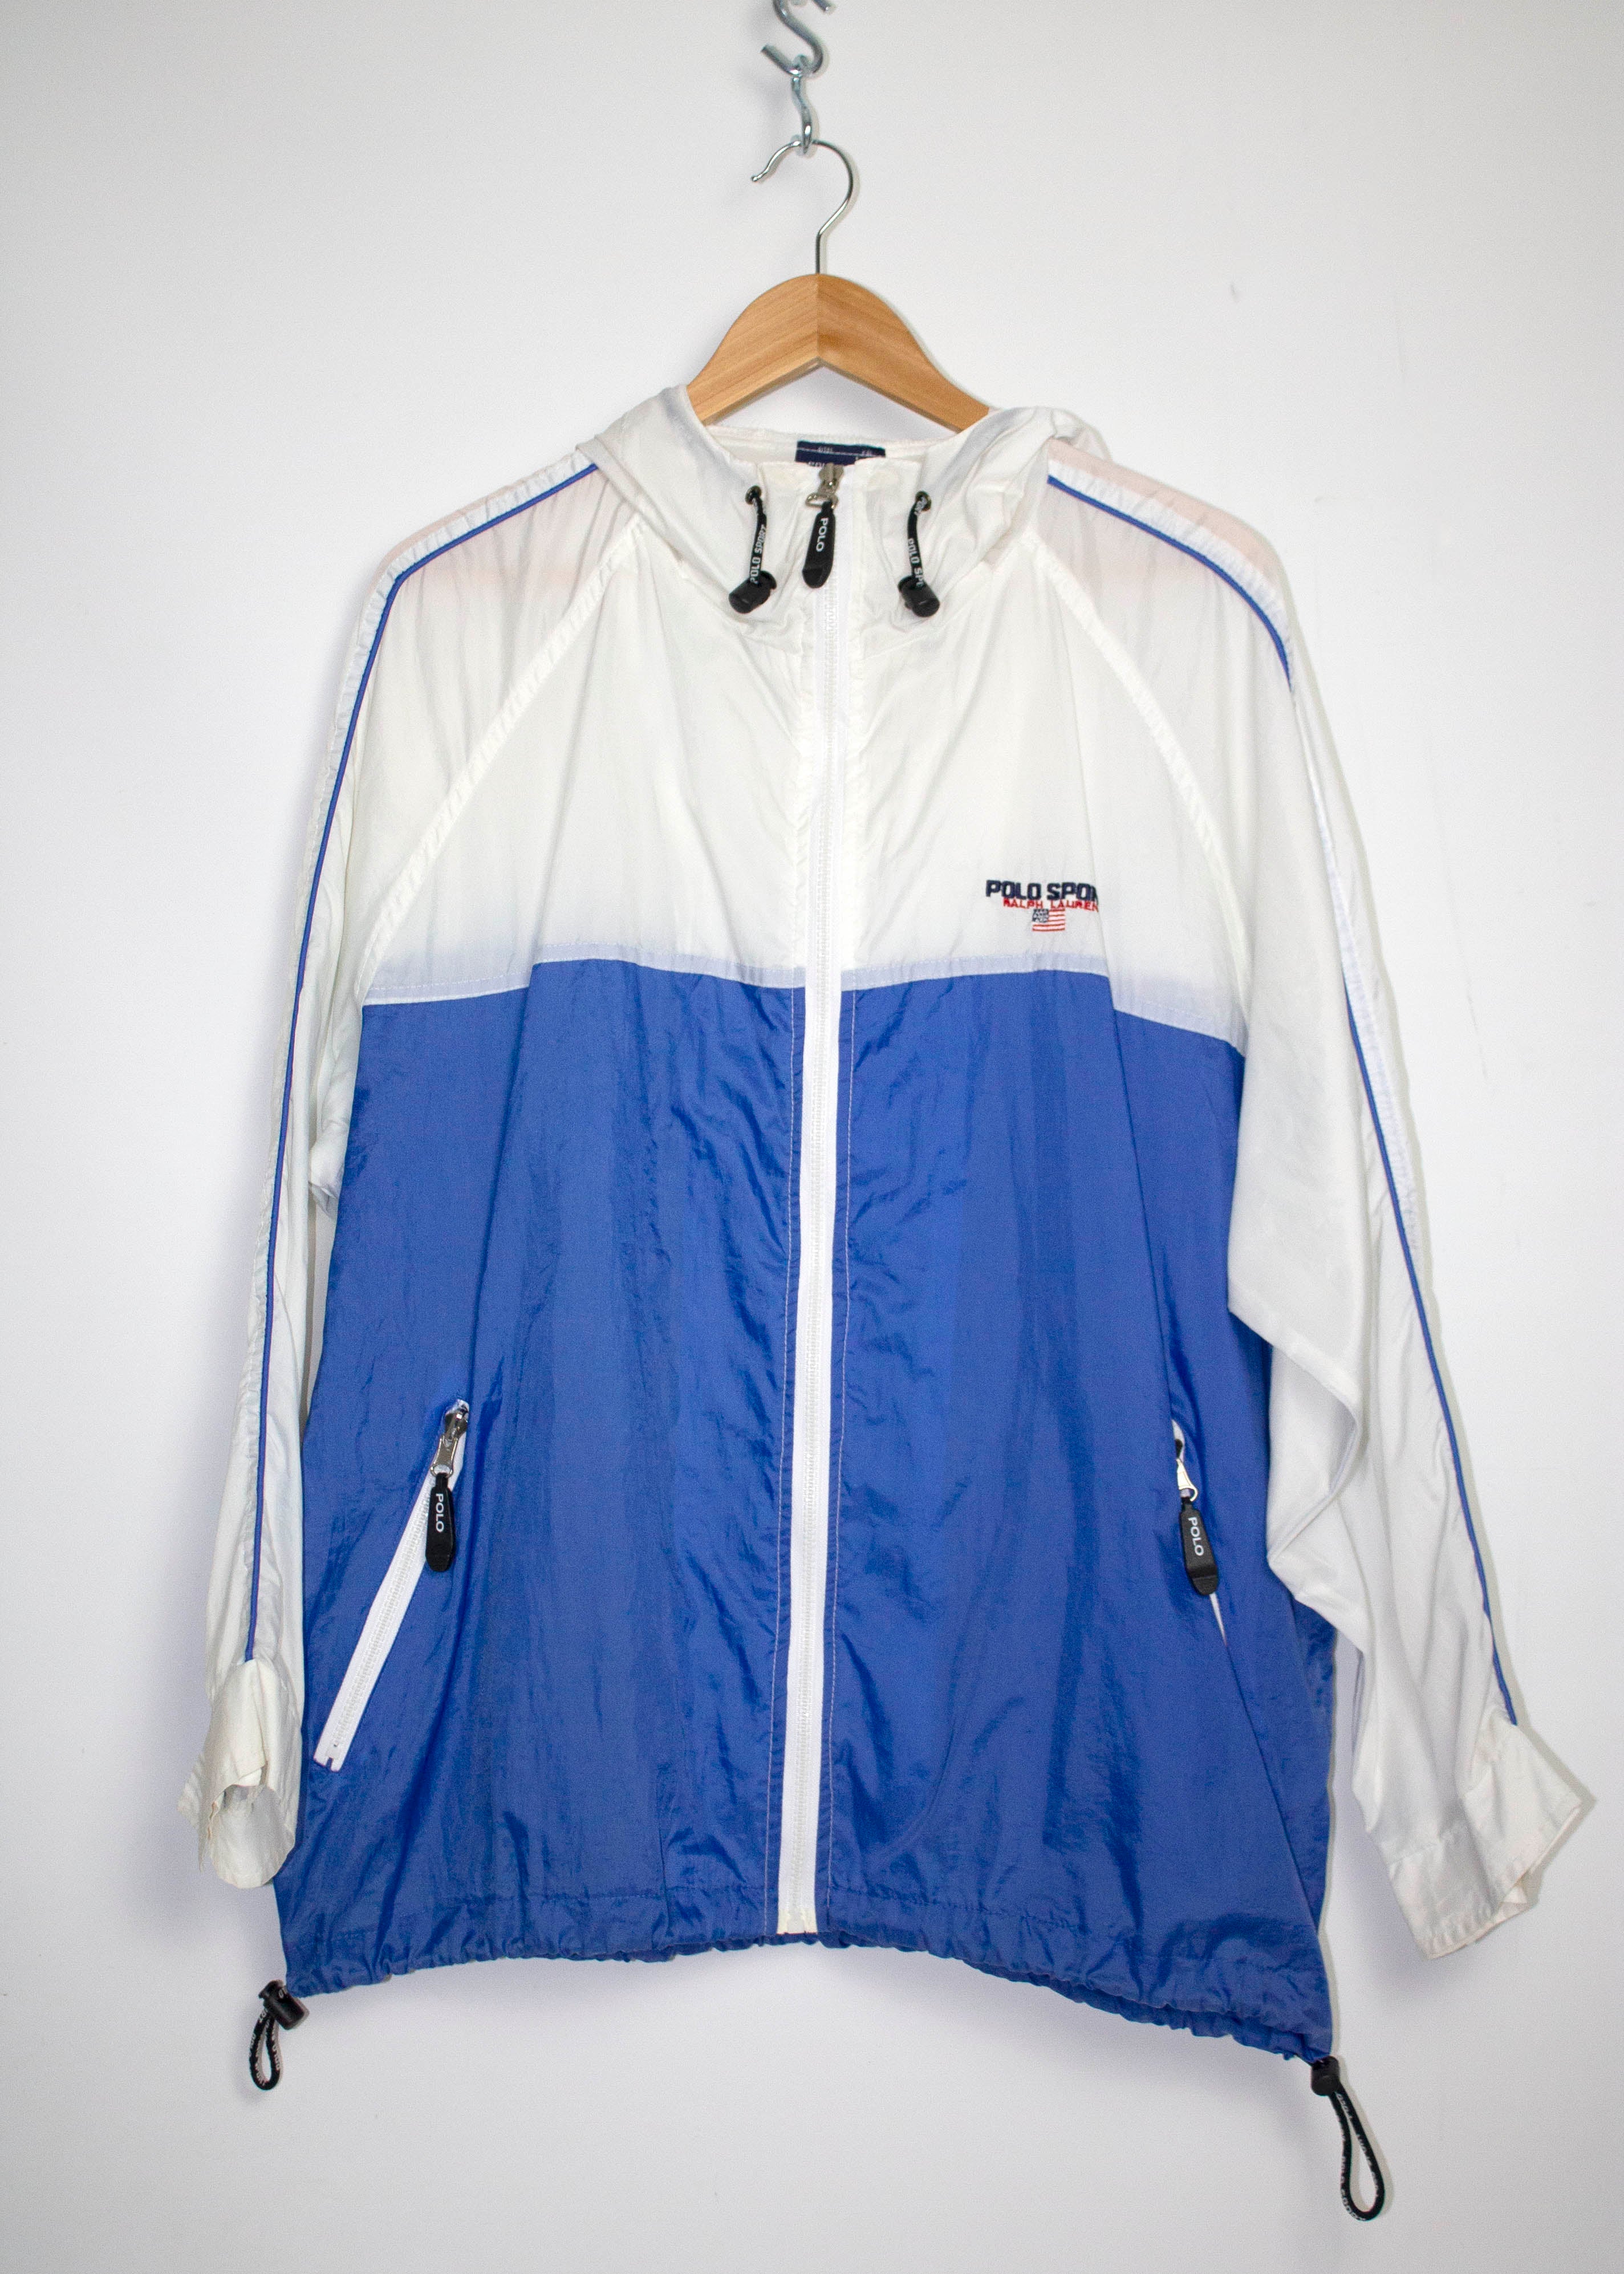 Vintage Polo Sport Ralph Lauren Hooded Windbreaker Jacket Sz L